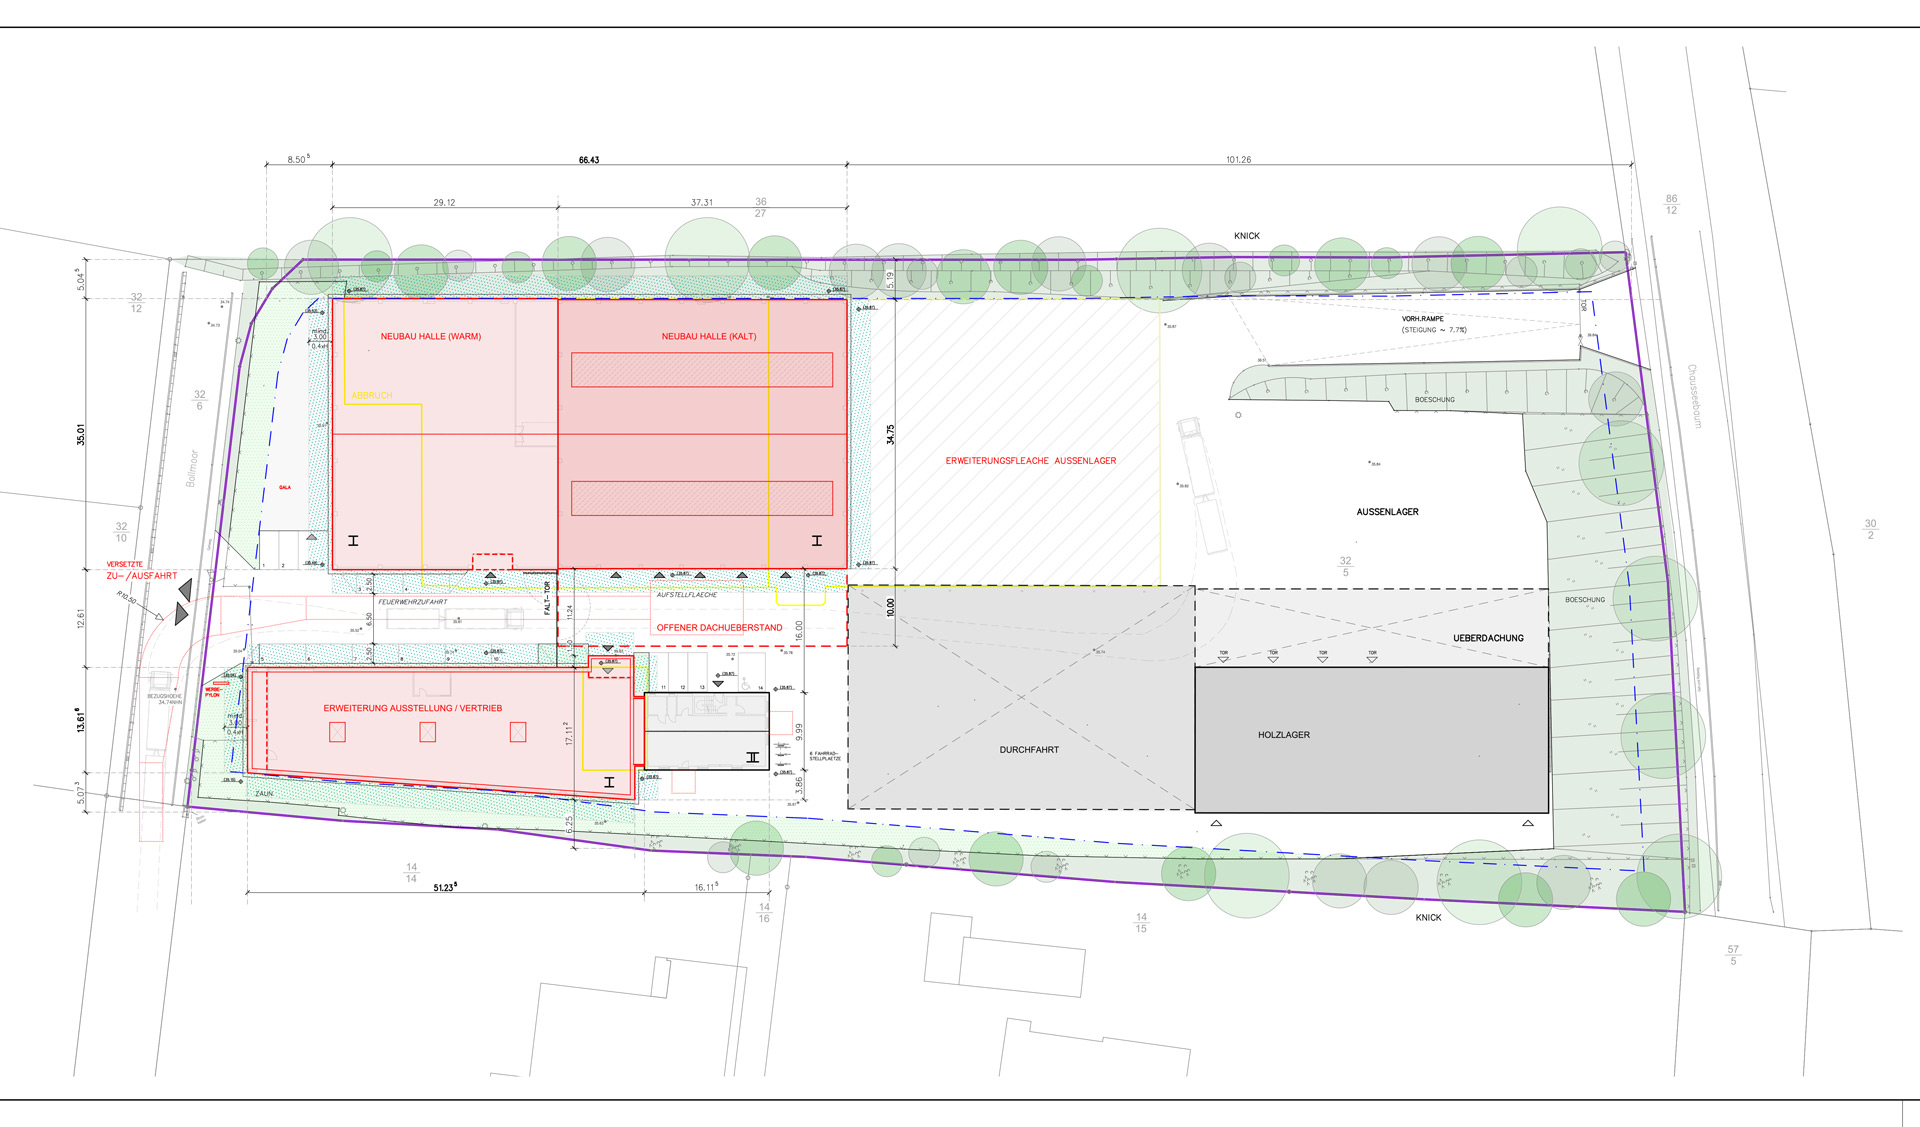 Neubau Vertriebsgebäude, Lagerhalle und CARRO-Fliesenmarkt JACOB CEMENT - Bauplan Preview